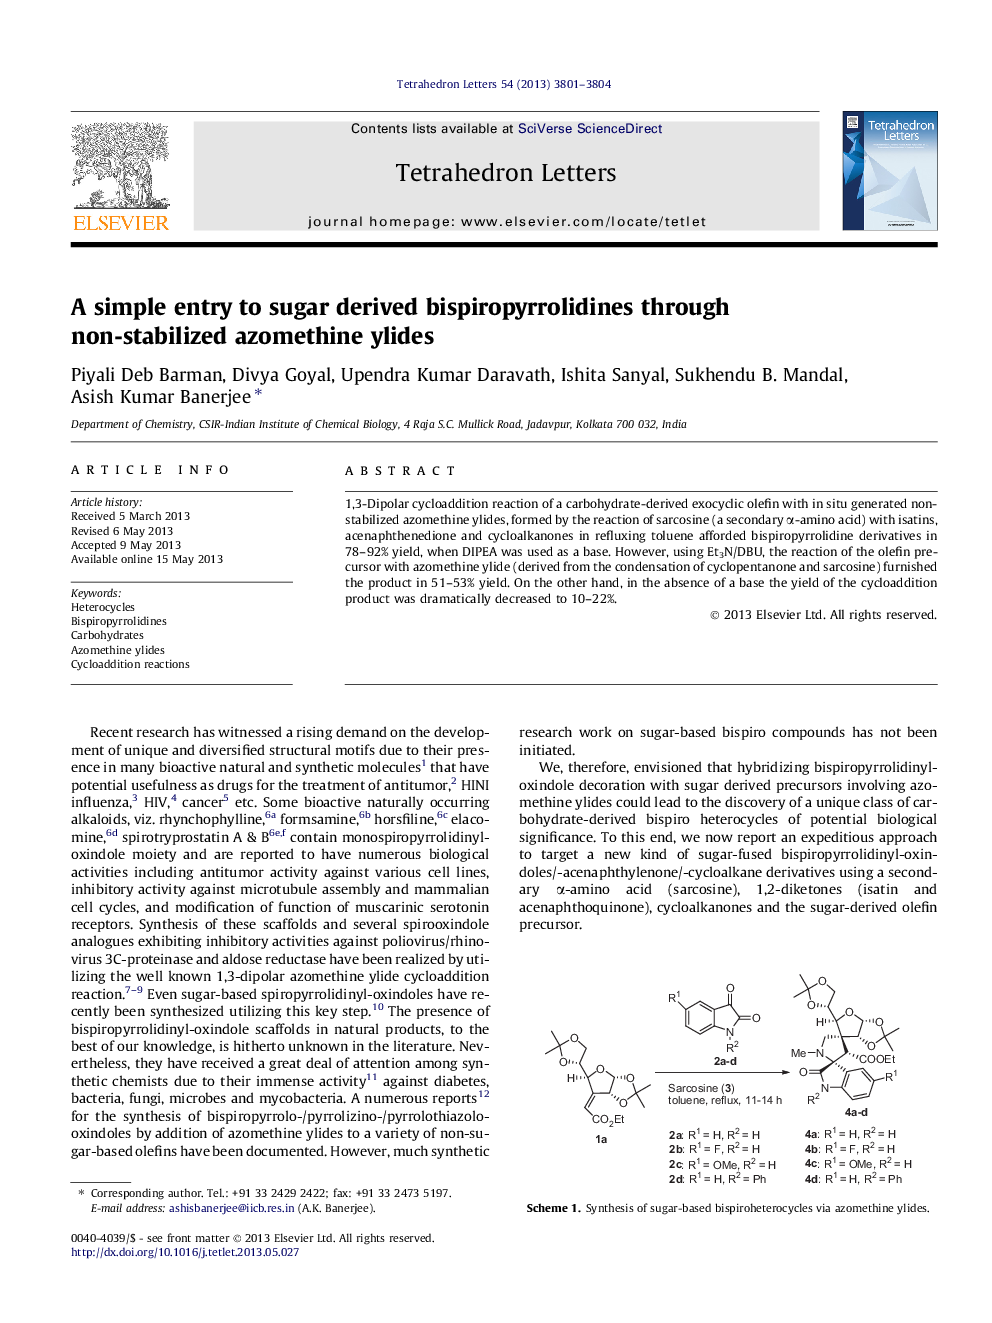 ورودی ساده به بیسپیروپروترولیدین های شکر به وسیله آسومتیل هاییدید غیر تثبیت شده 